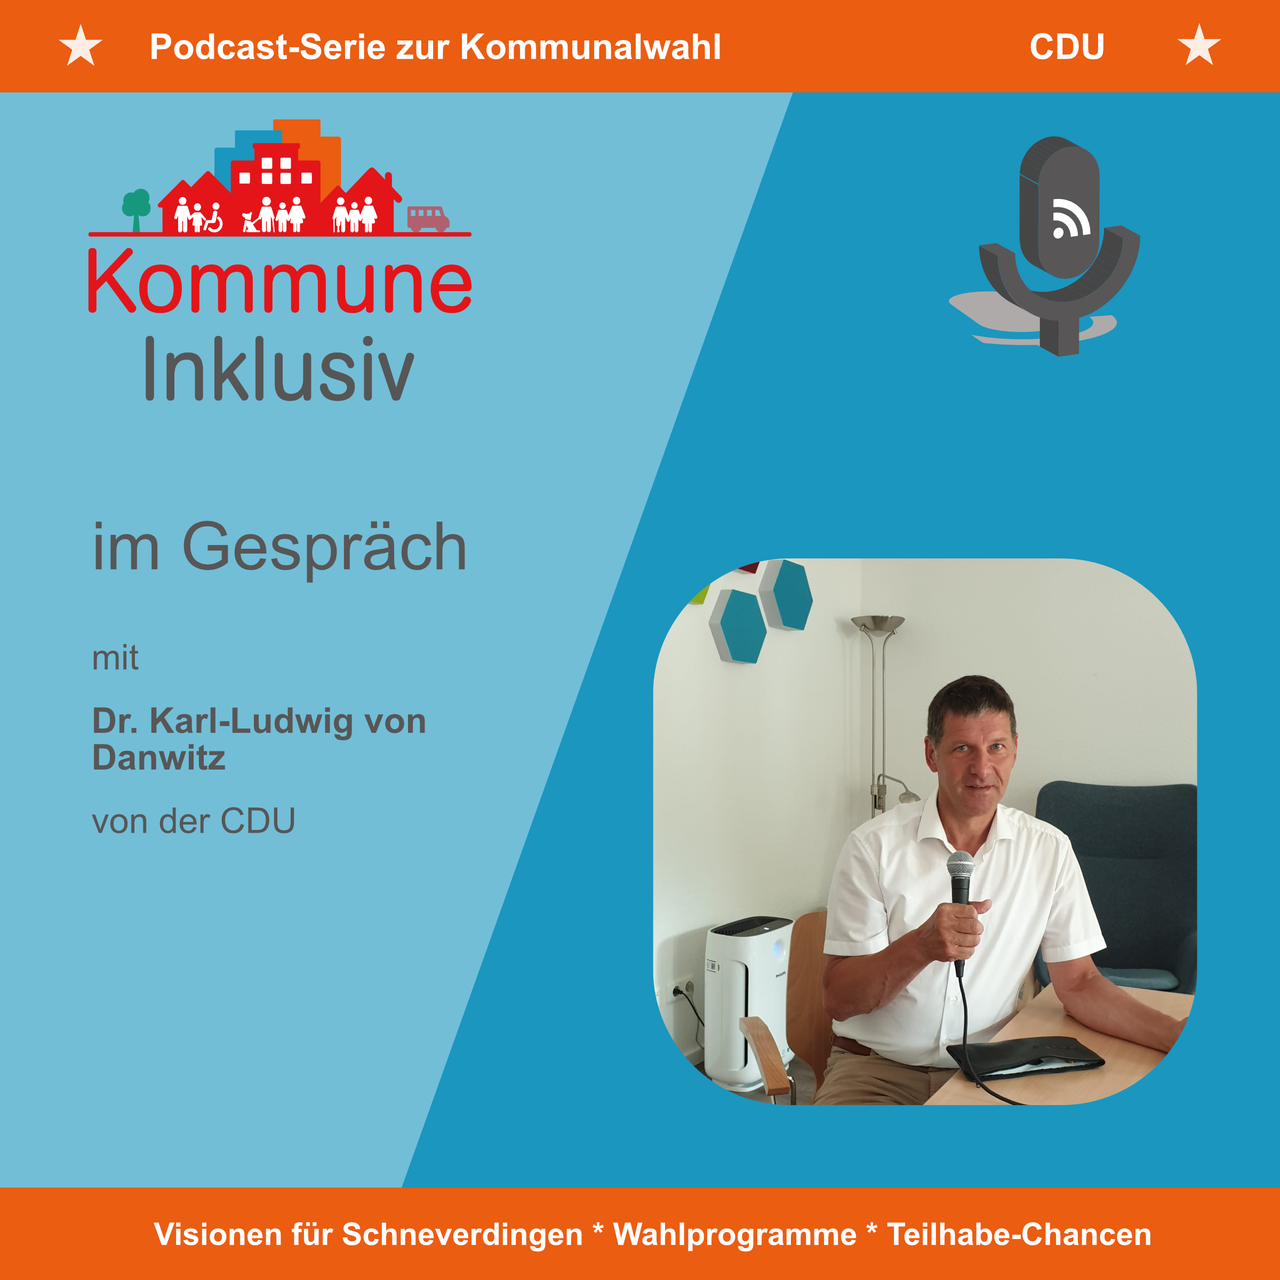 Zu sehen ist das Titelbild der Podcast-Folge mit Dr. Karl-Ludwig von Danwitz von der CDU